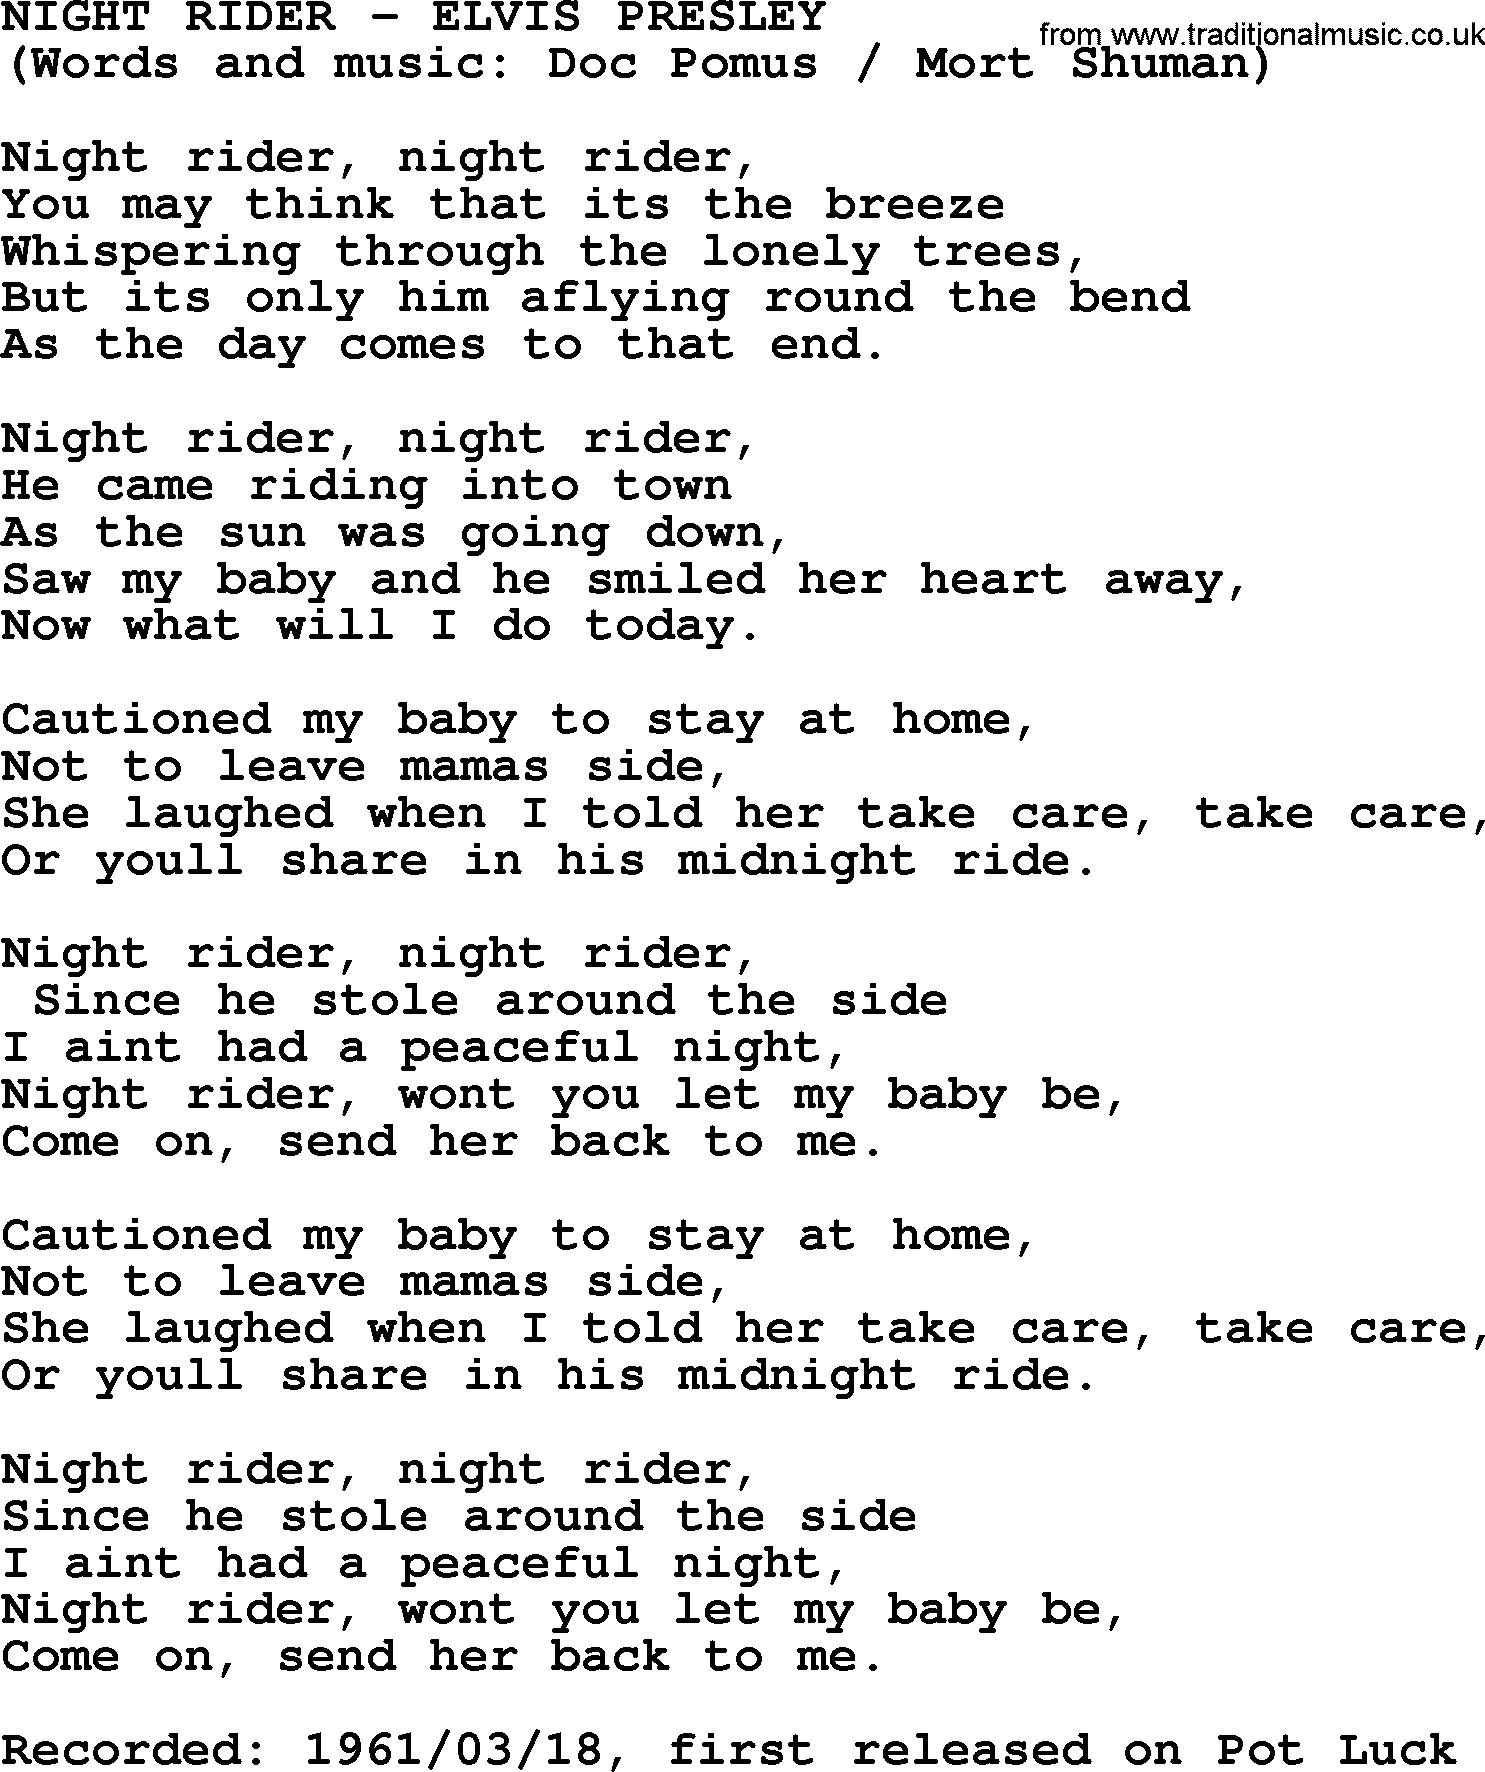 Elvis Presley song: Night Rider lyrics